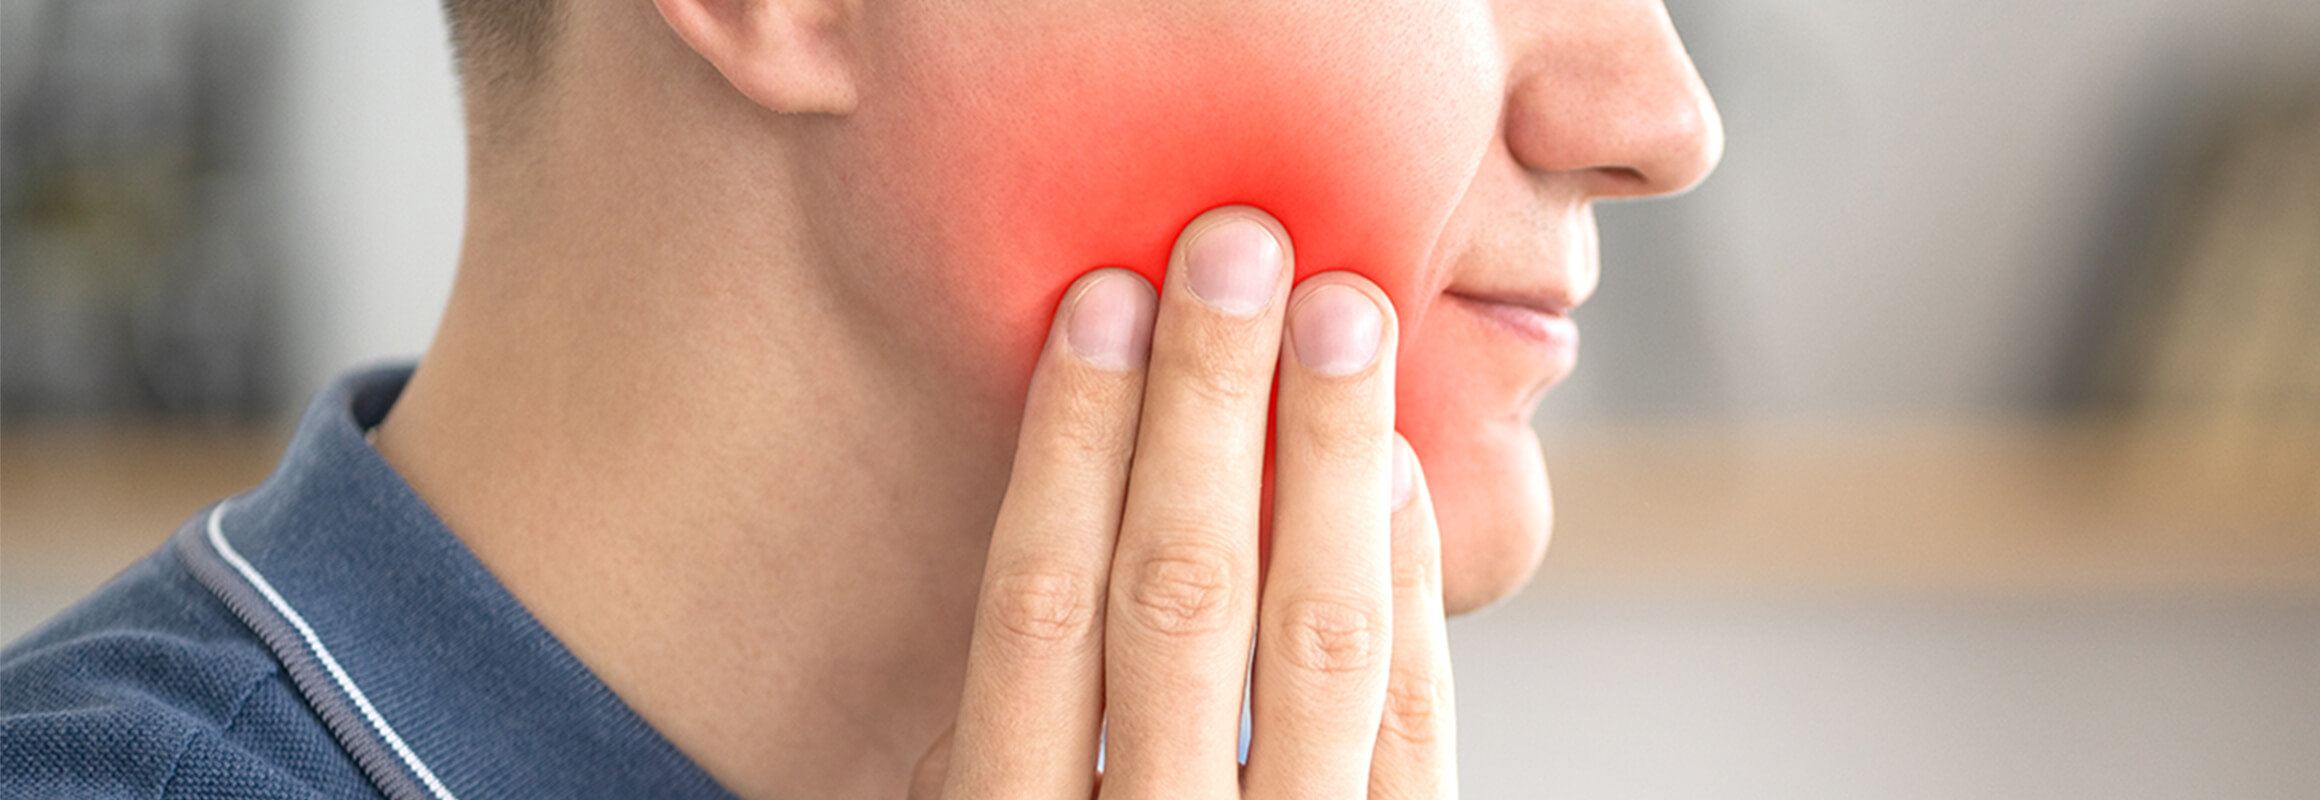 原因不明の歯の痛みをあらゆる角度から診断・治療